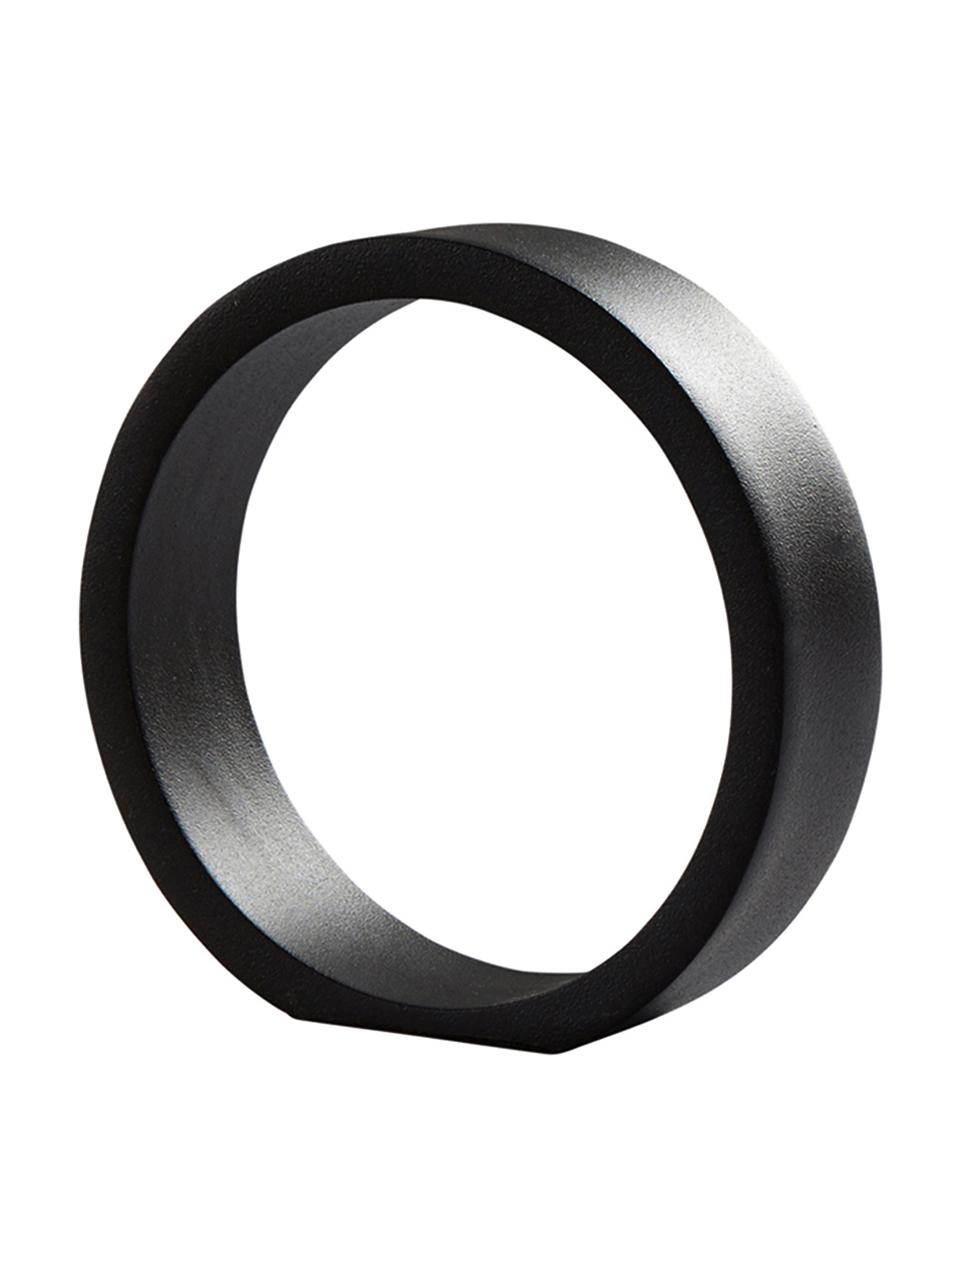 Objet décoratif Ring, Noir